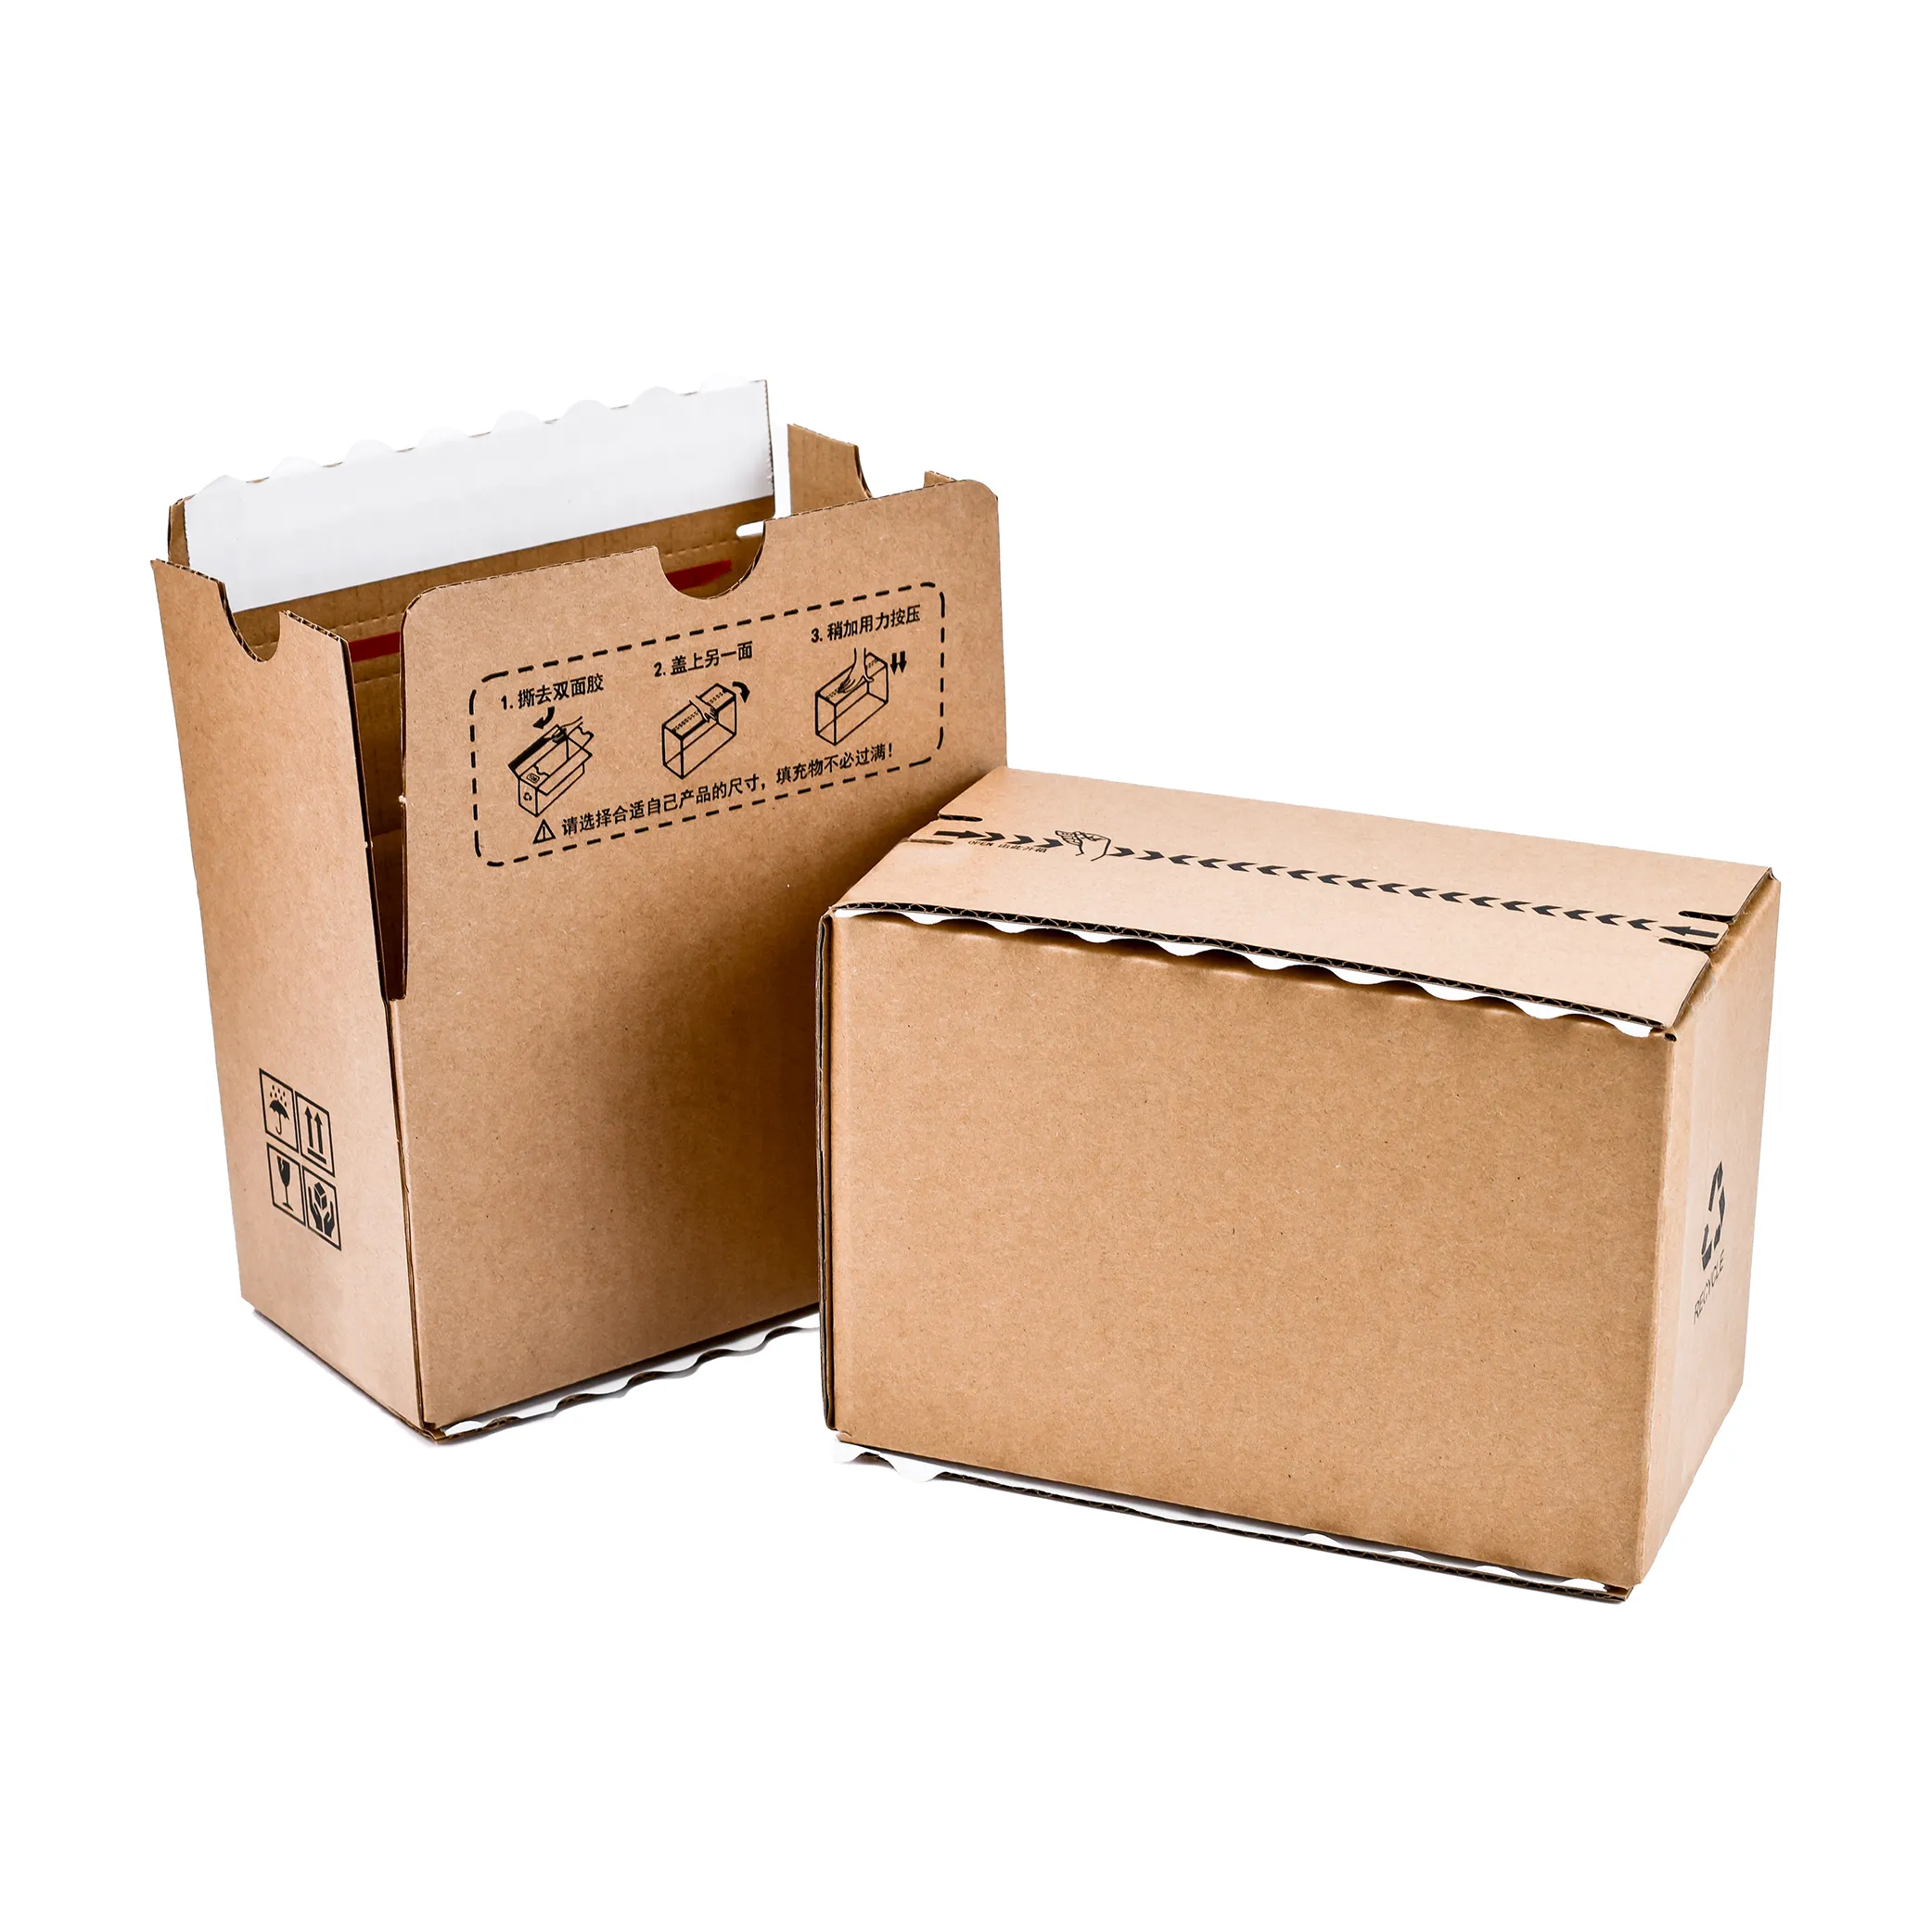 OEM Fabrik Benutzer definierte Logo Farbe Wellpappe Geschenk Falt schachtel Versand papier Reiß verschluss Mailer Box Verpackung Papier box mit Logo